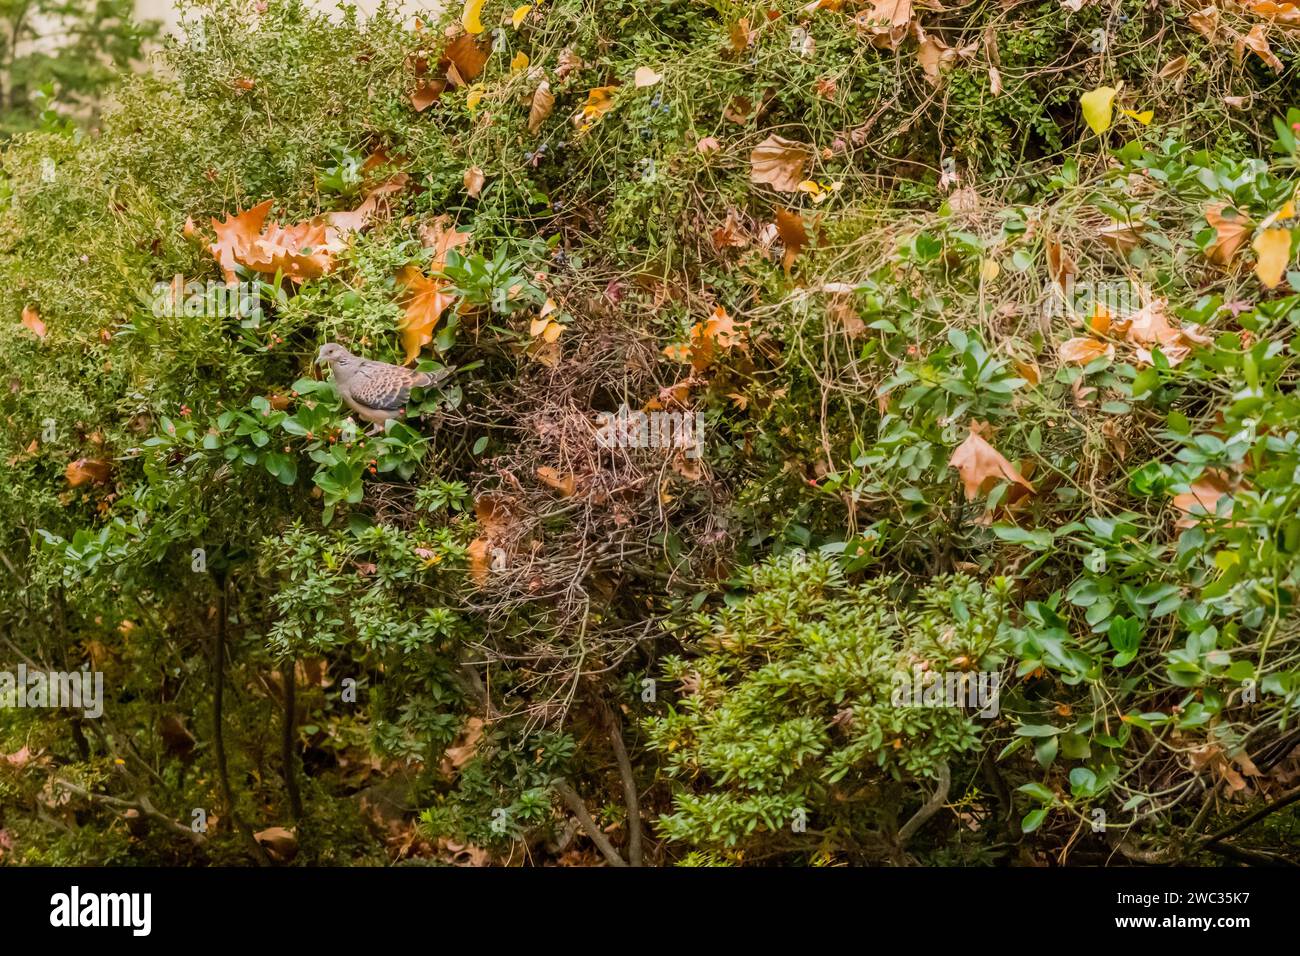 Tourterelle orientale perchée sur le buisson de baies de cotoneaster Banque D'Images